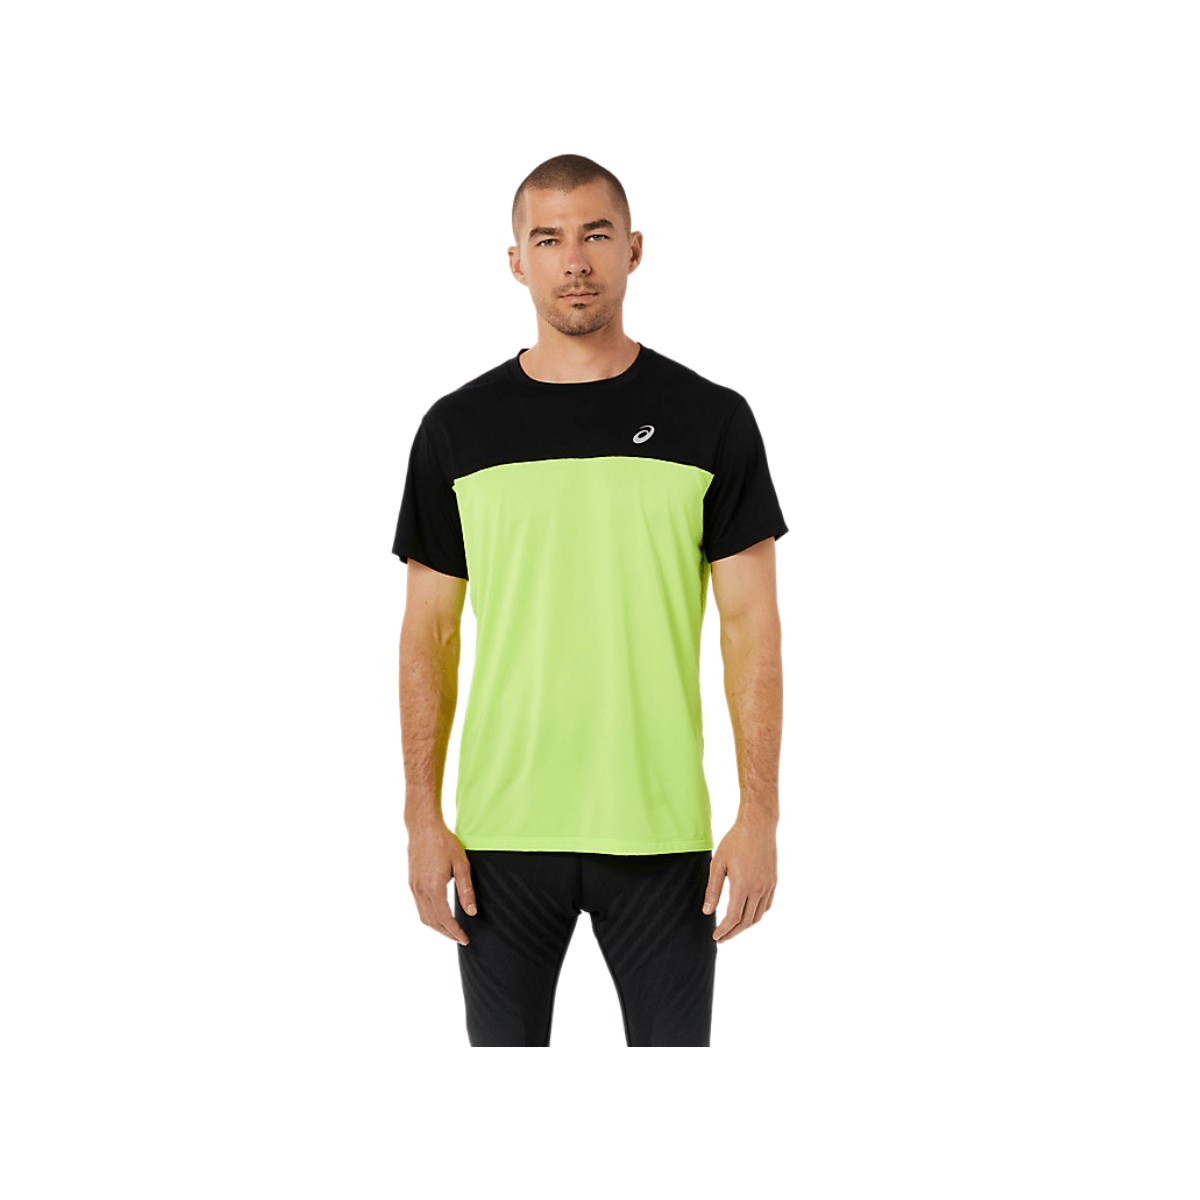 Asics Race SS TOP T-Shirt Kurzarm gelb schwarz SS22, Größe S